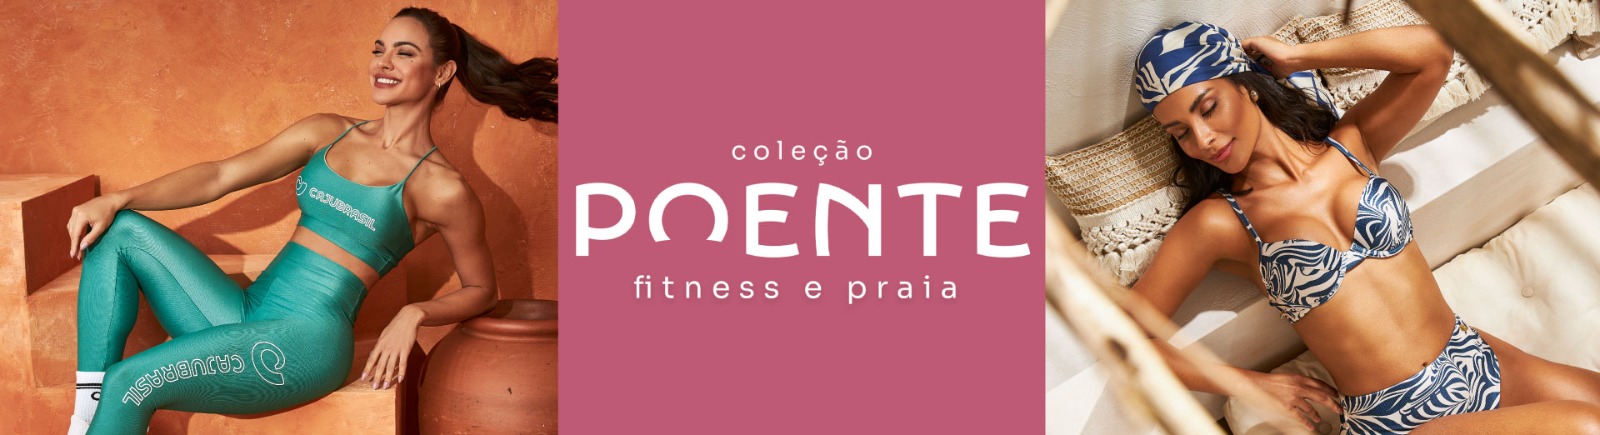 banner_praia_fitness_poente.jpg